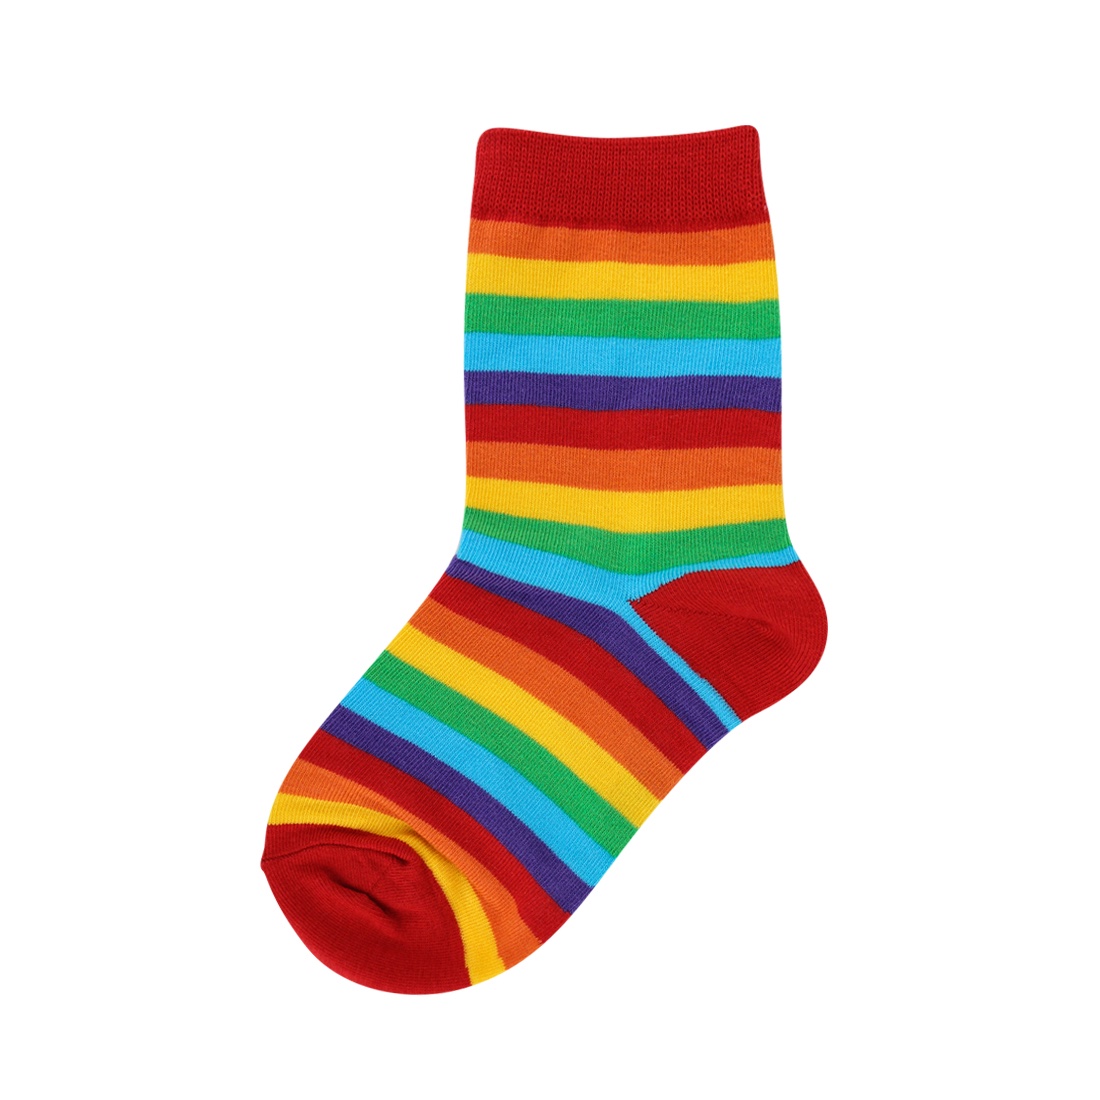 Children's Rainbow Socks, Kids Novelty Socks: Foot Traffic